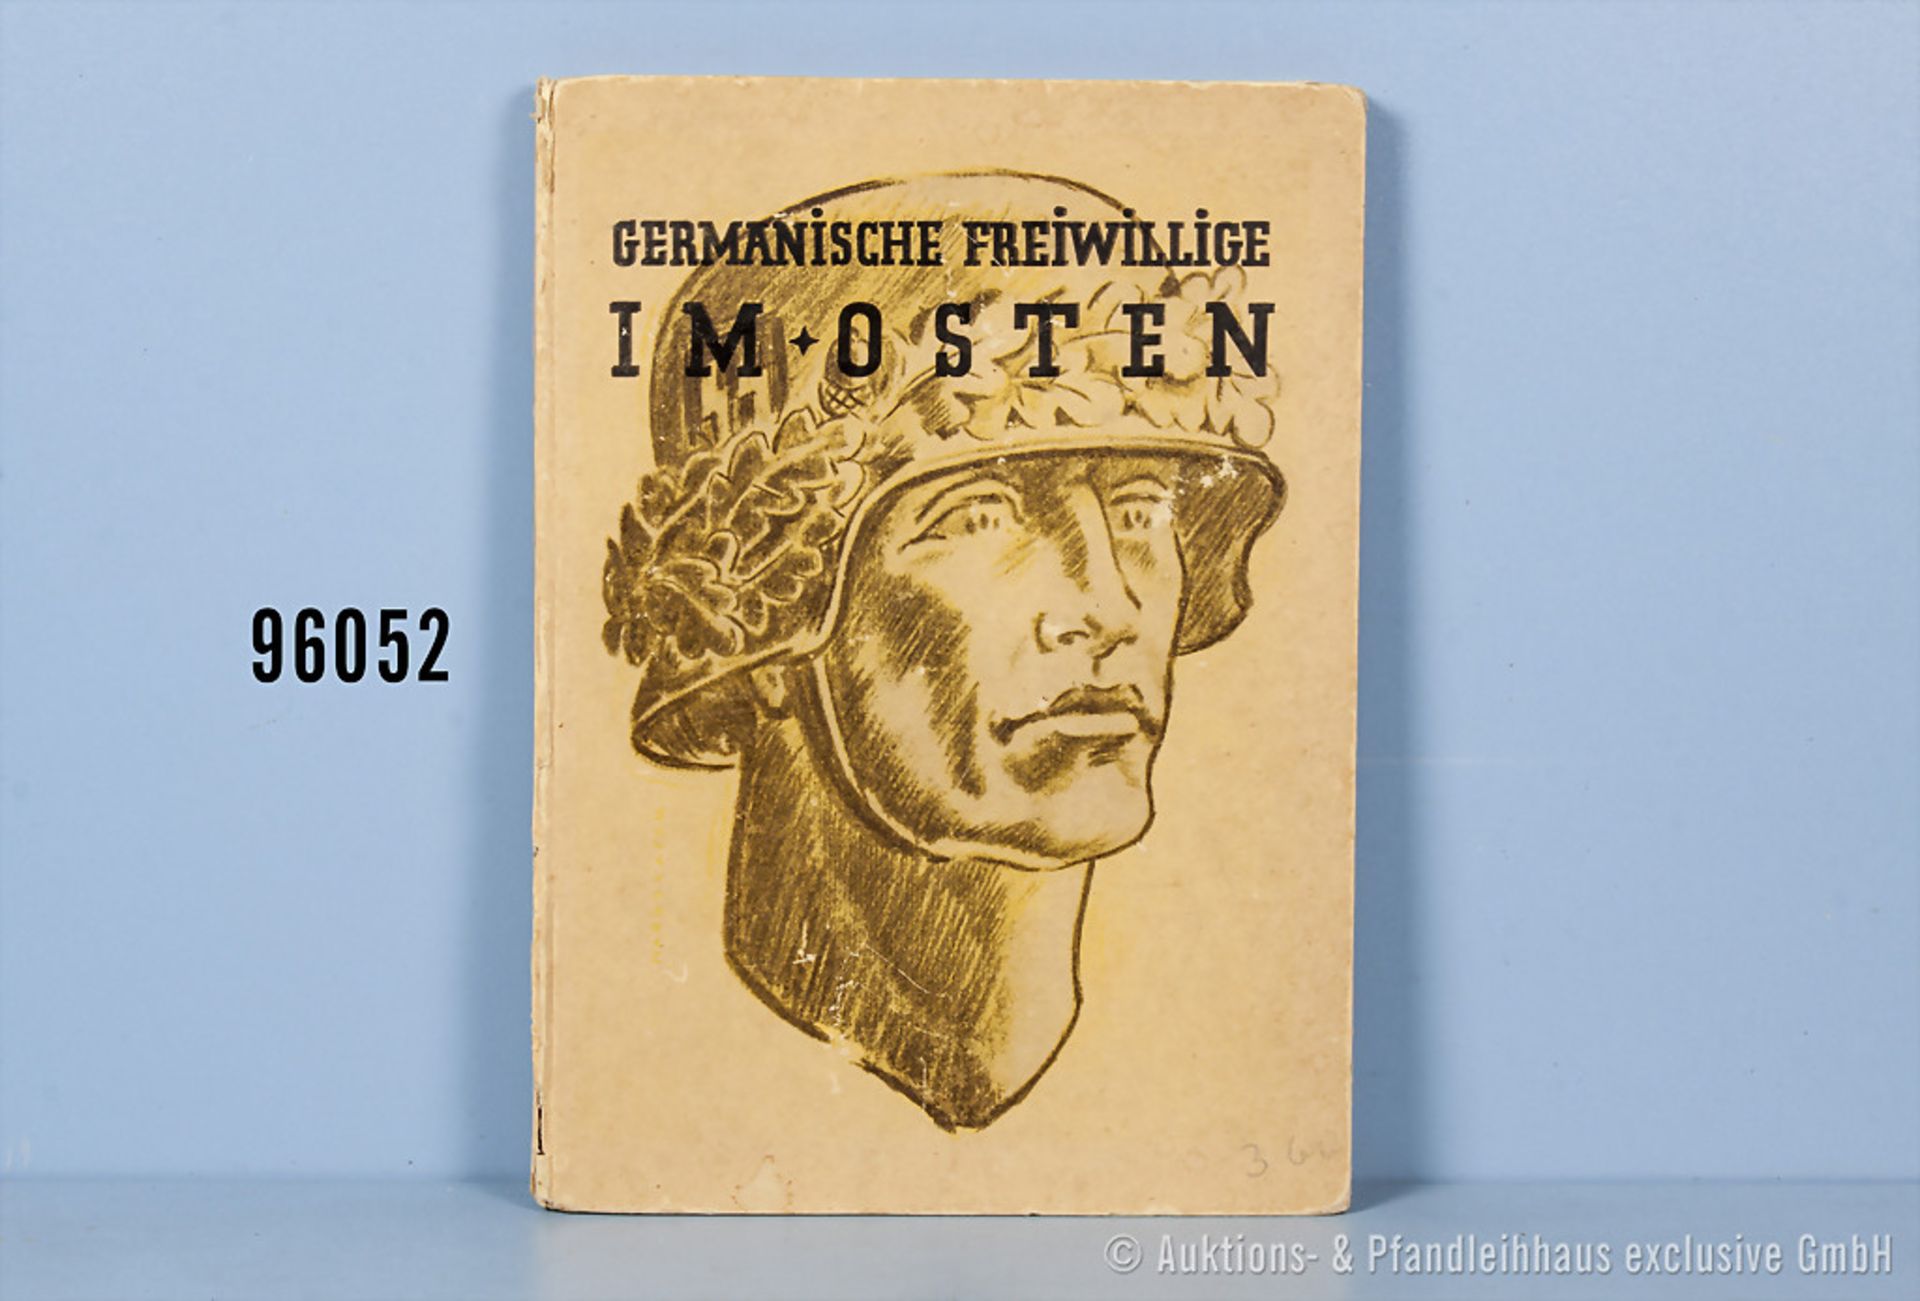 Buch "Germanische Freiwillige im Osten" von 1943, 76 Seiten, Pappeinband, Buchrücken mit kleineren